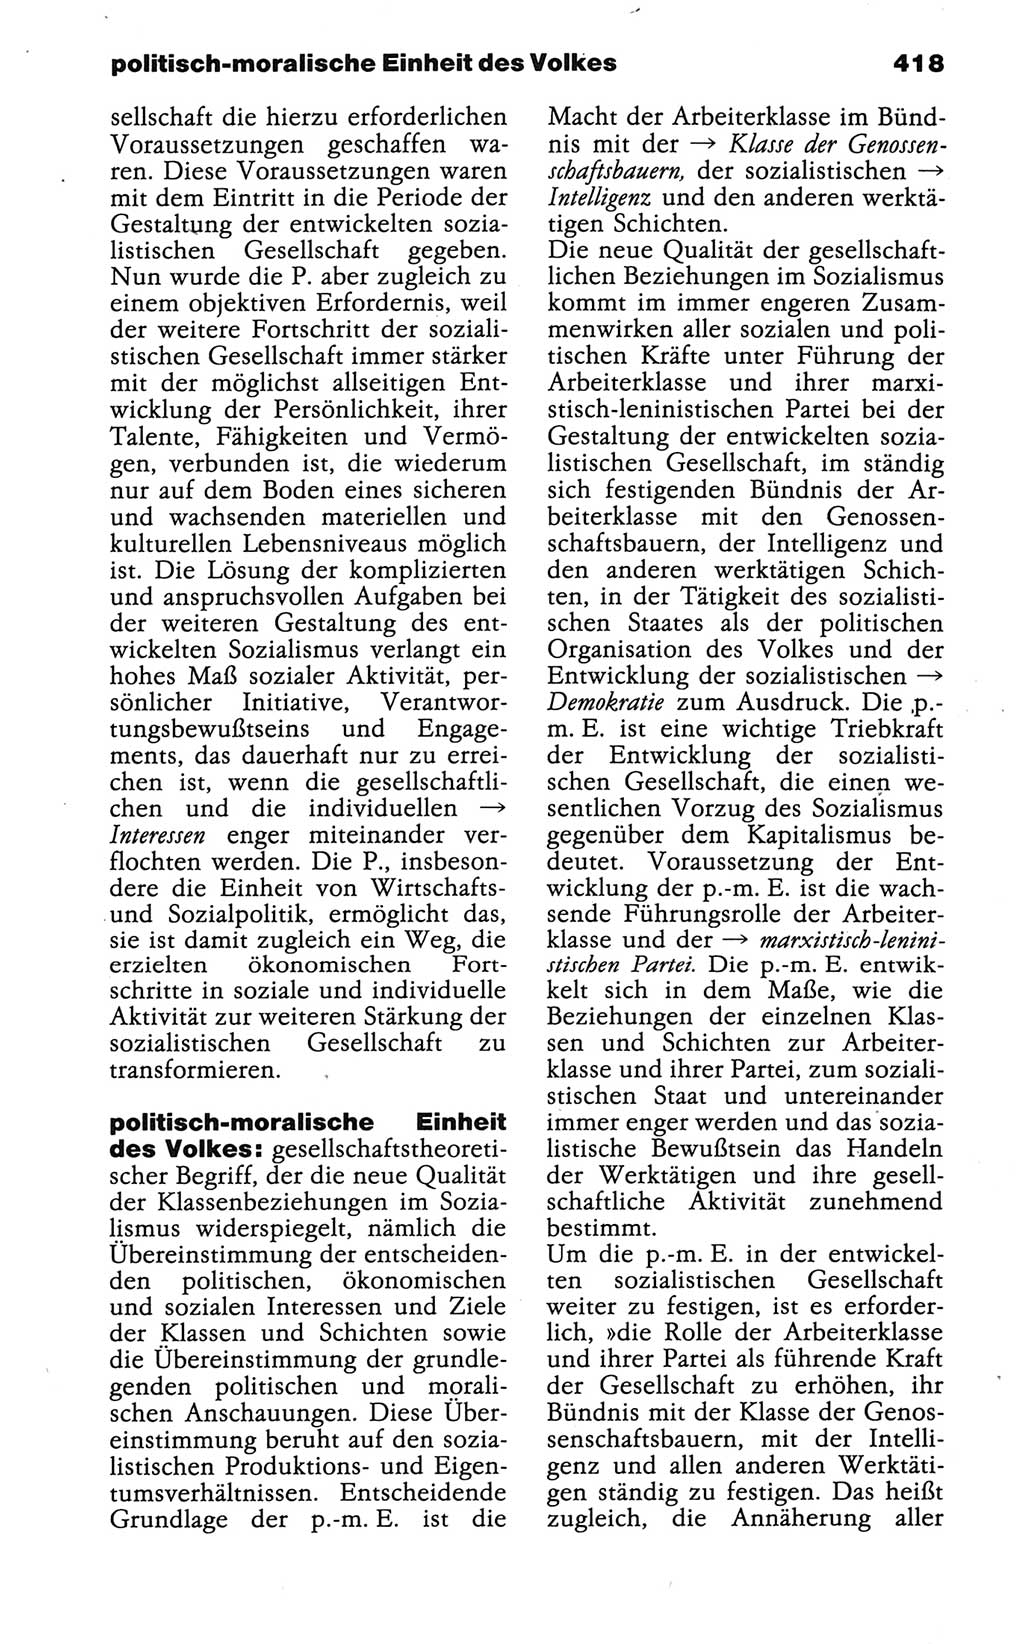 Wörterbuch der marxistisch-leninistischen Philosophie [Deutsche Demokratische Republik (DDR)] 1986, Seite 418 (Wb. ML Phil. DDR 1986, S. 418)